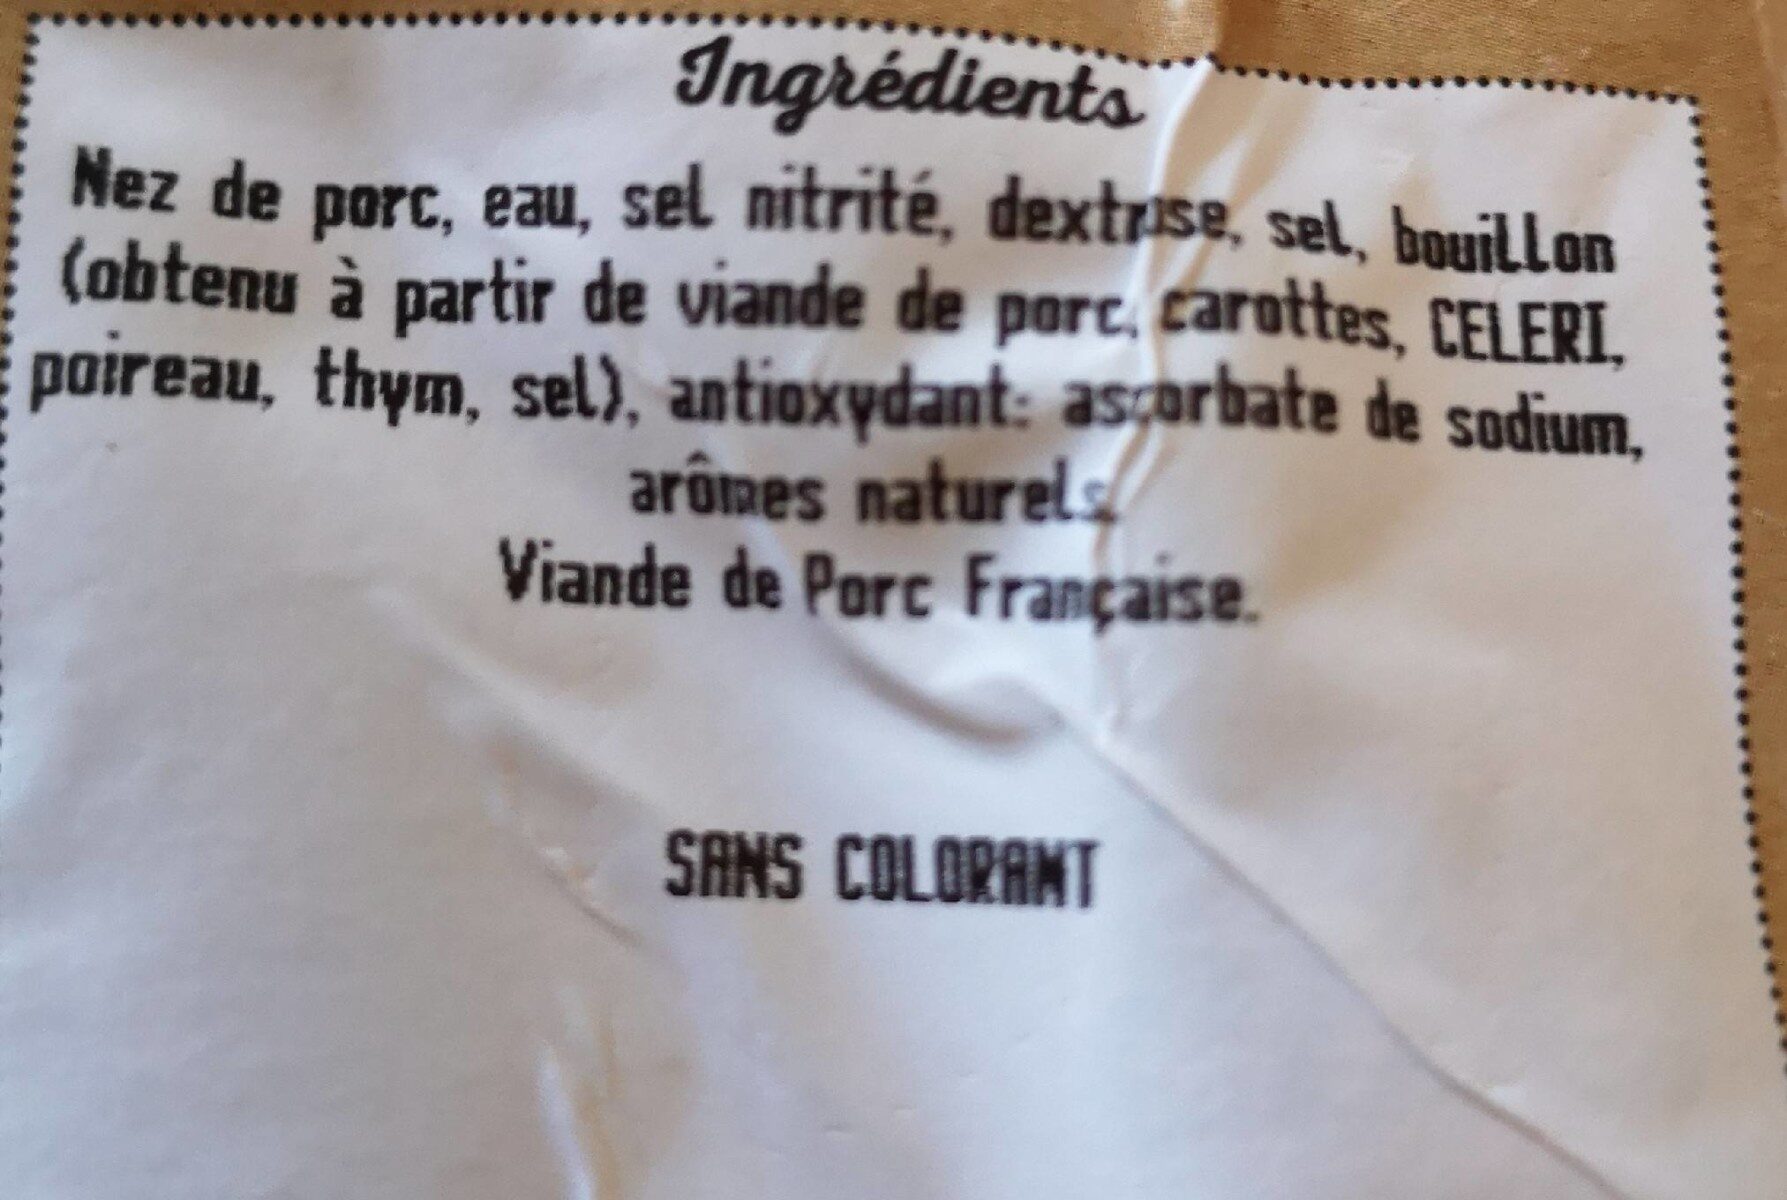 Nez de cochon cuits - Ingredients - fr